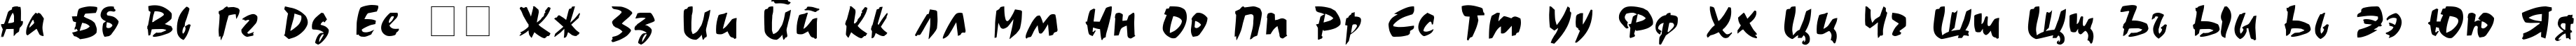 Пример написания русского алфавита шрифтом Choc Choc